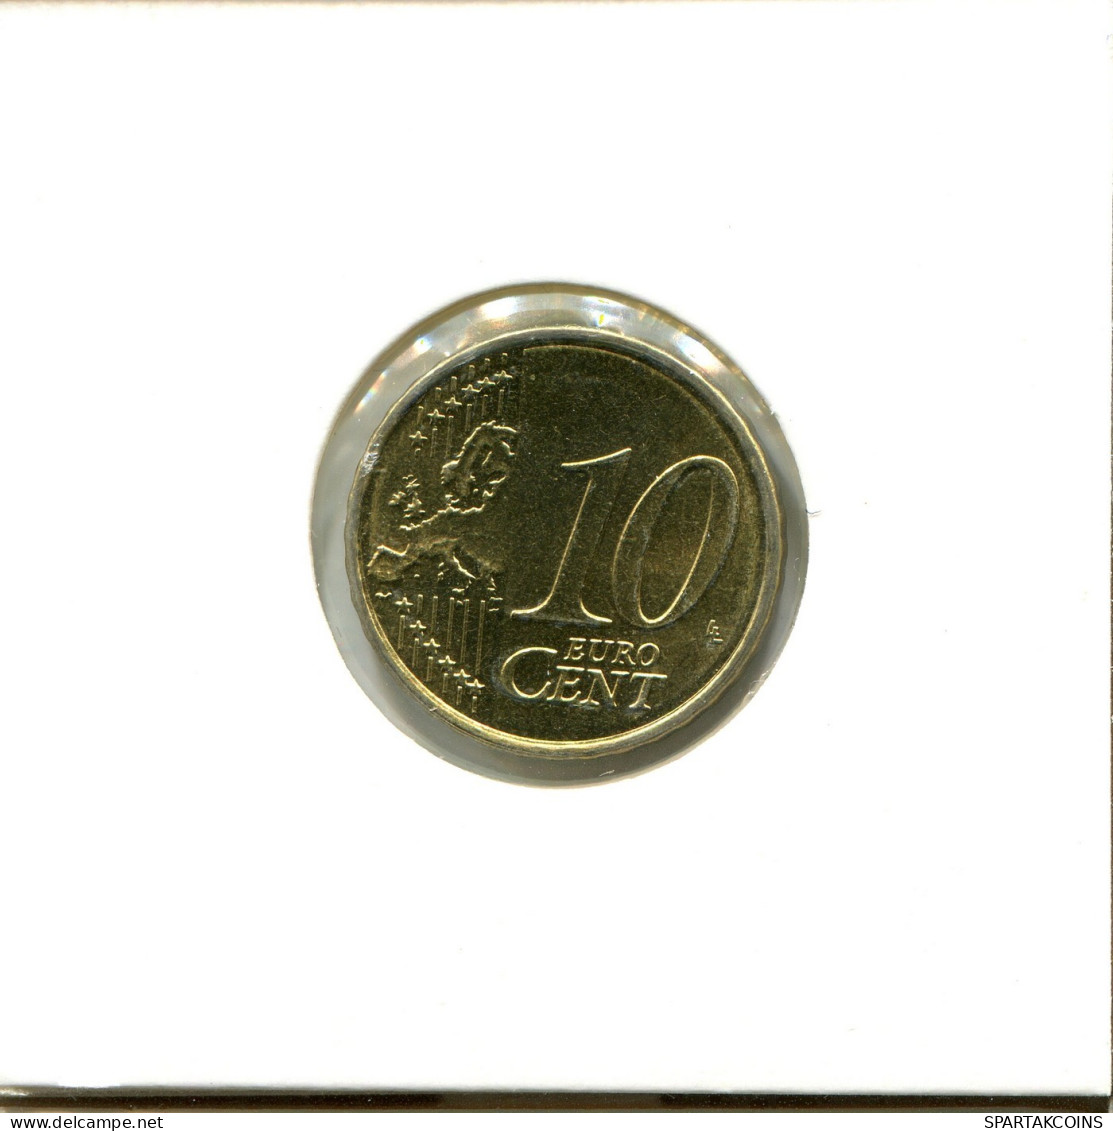 10 EURO CENTS 2009 ESPAÑA Moneda SPAIN #EU561.E.A - Spanje